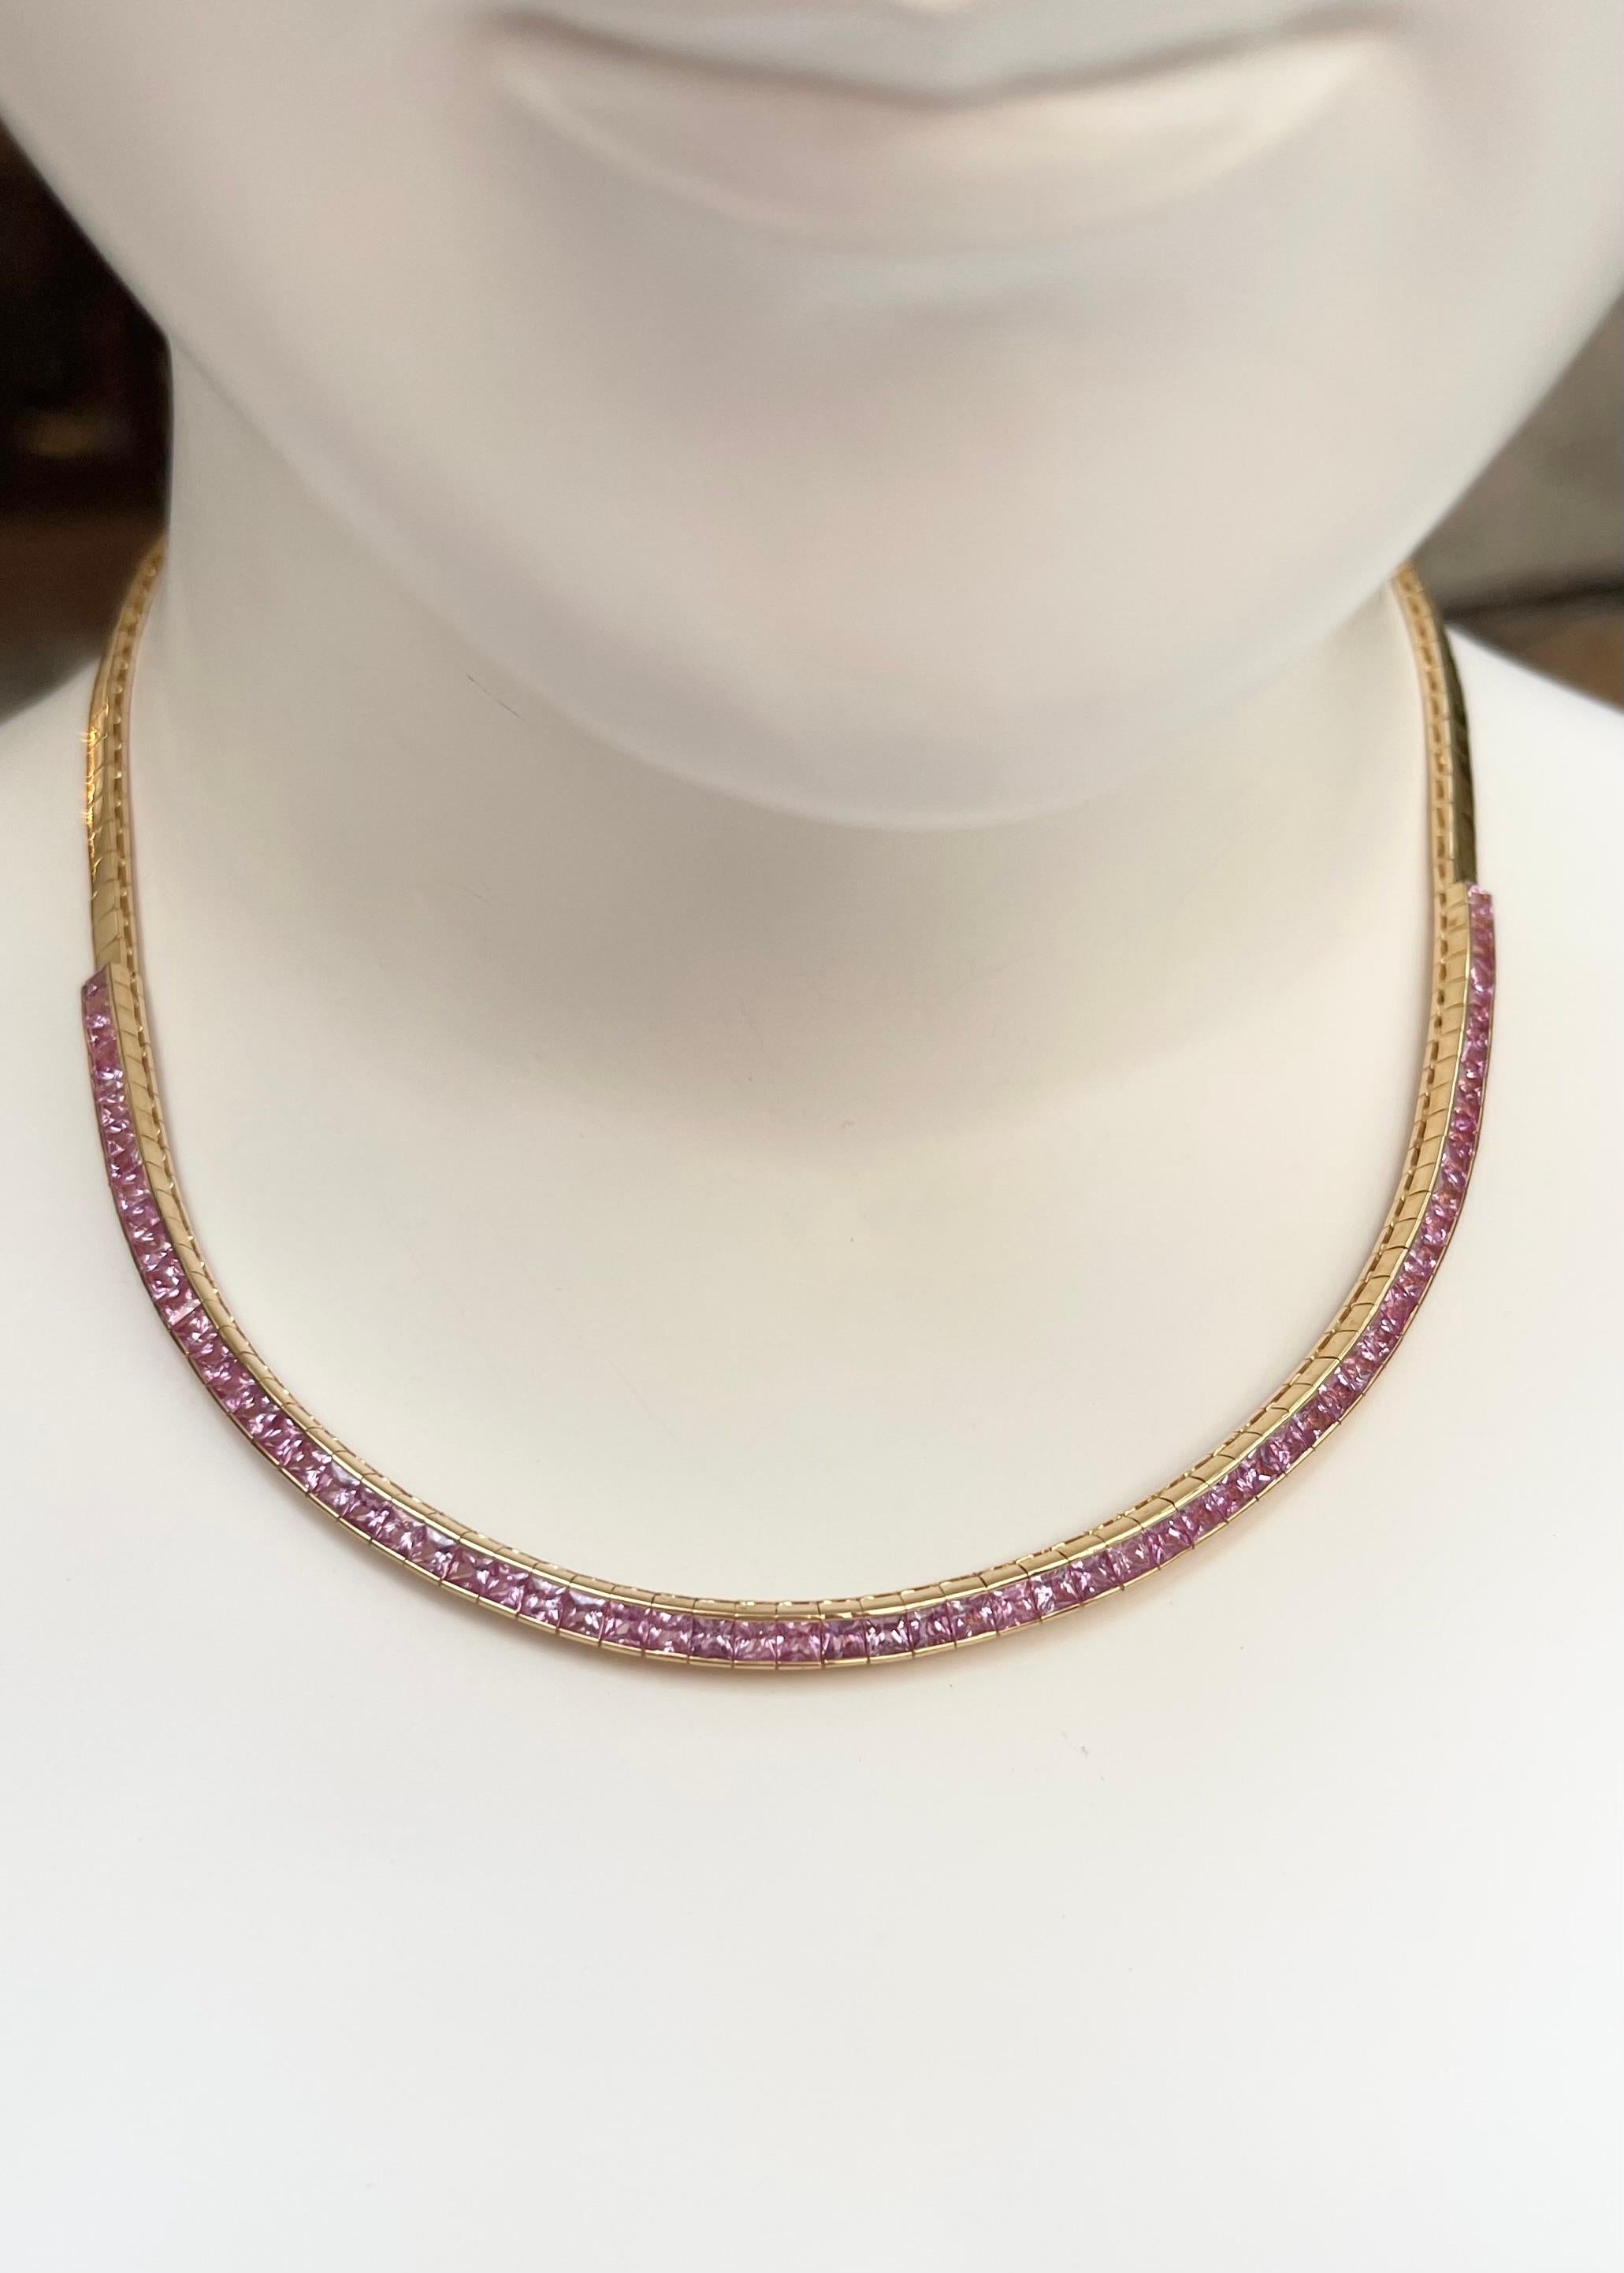 Saphir rose 9.09 carats Collier serti en or 18K

Largeur : 0,4 cm 
Longueur : 40,5 cm
Poids total : 31,60 grammes

